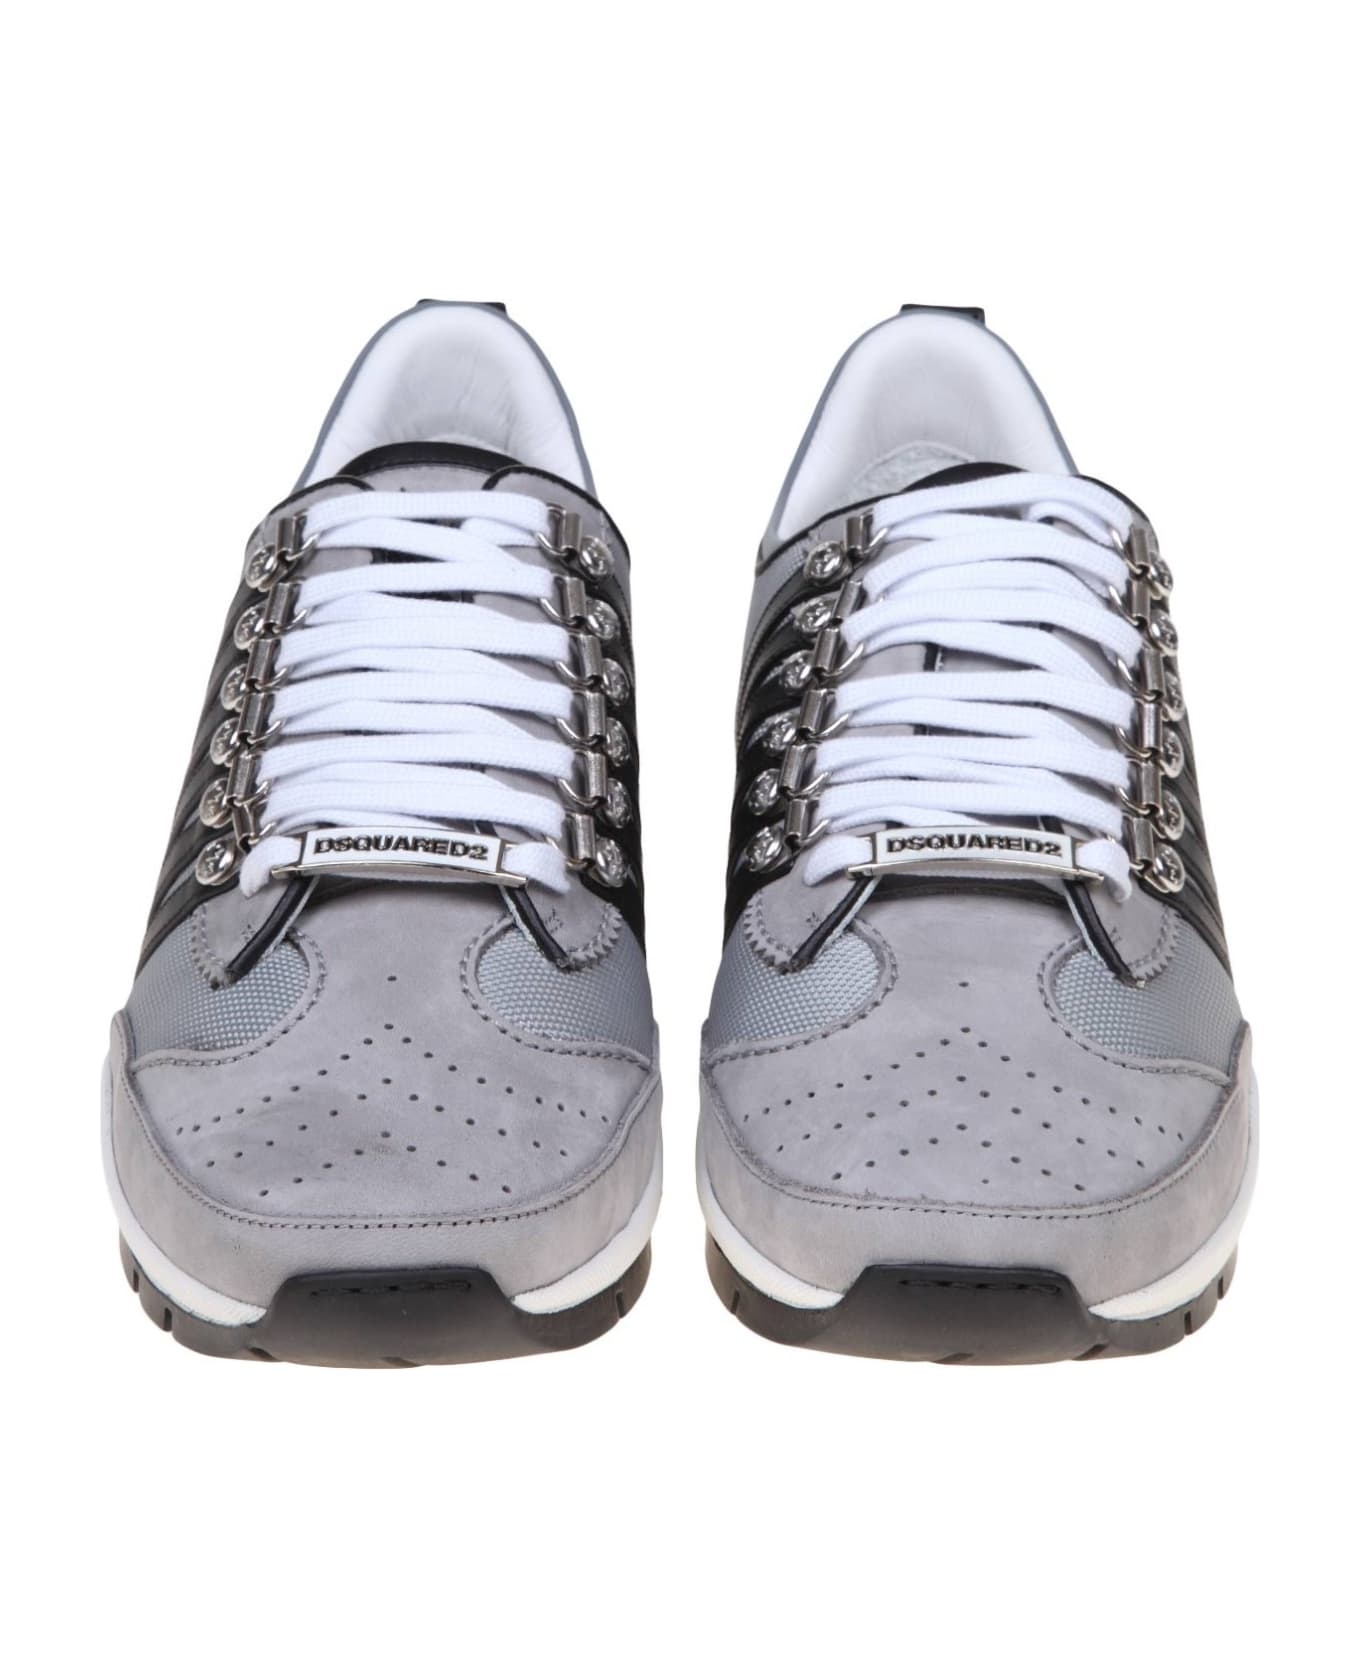 Dsquared2 Legendary Sneakers - Gray / Black スニーカー